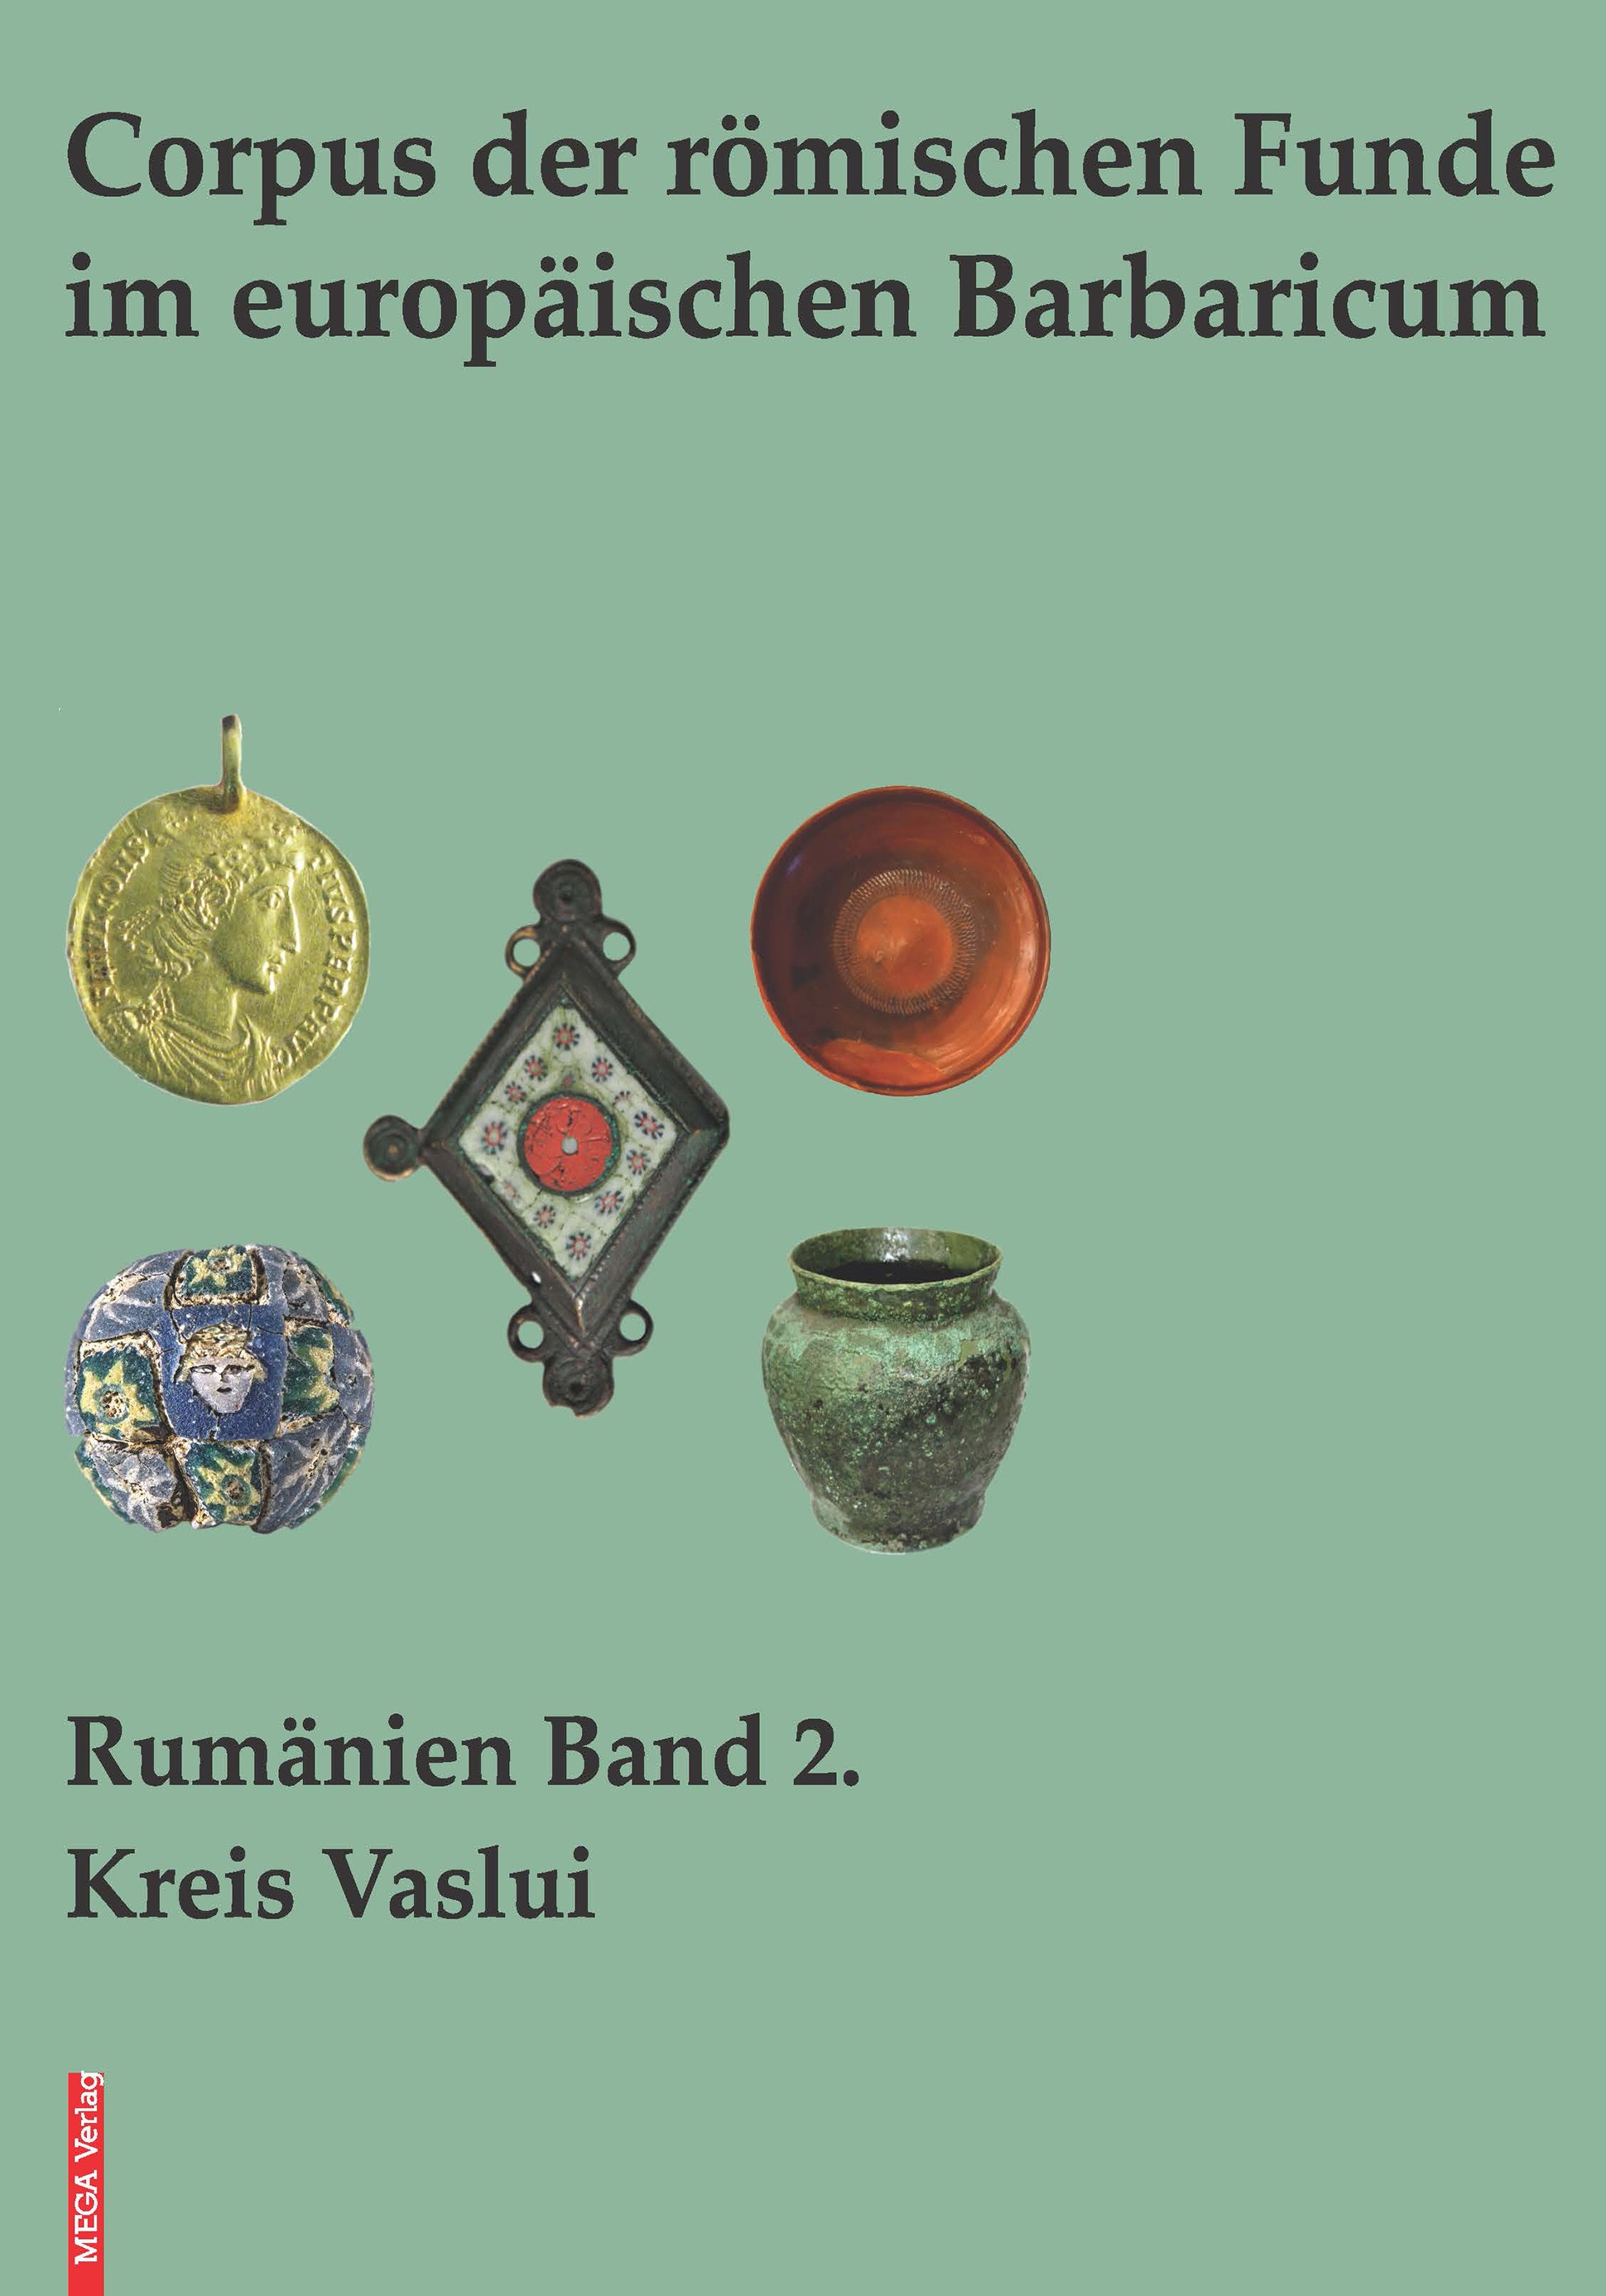 Grumeza, Lavinia : Corpus der römischen Funde im europäischen Barbaricum Rumänien Band 2. Kreis Vaslui